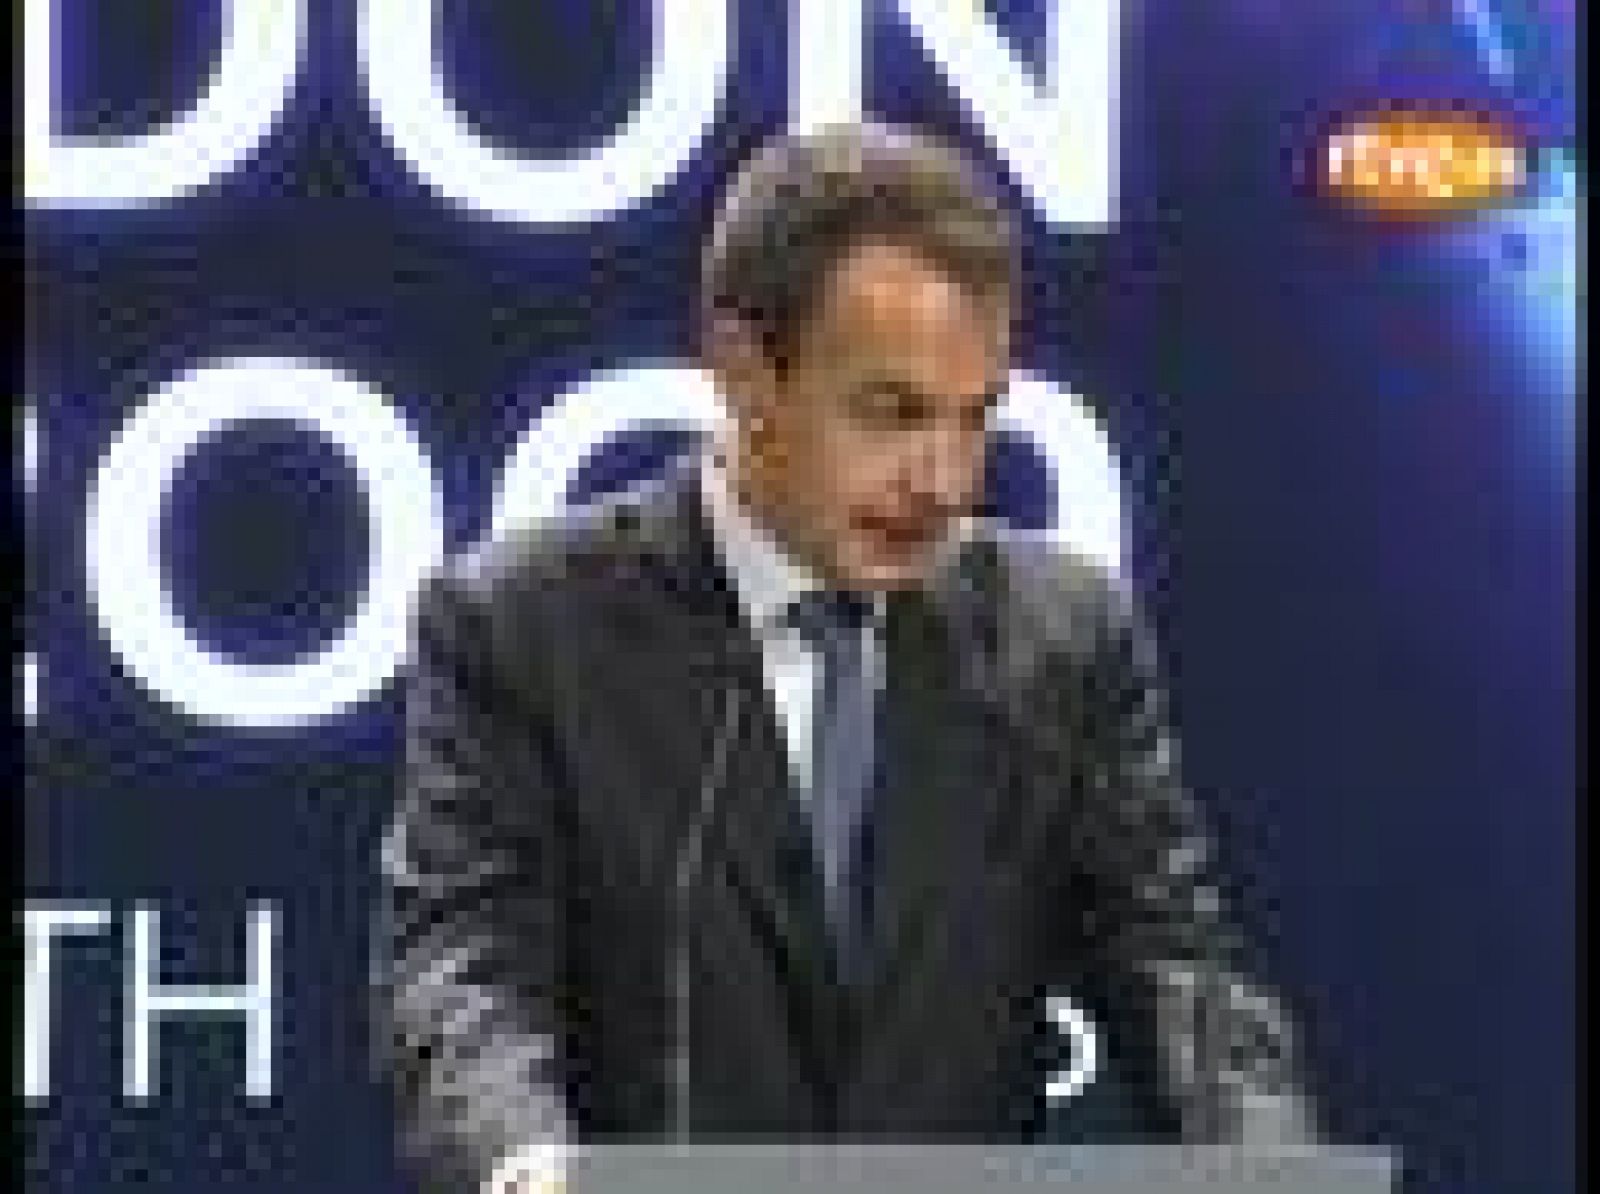 El presidente del Gobierno, José Luis Rodríguez Zapatero, ha declarado que en la reunión del G-20 en Londres se ha puesto en marcha "el mayor plan de expansión fiscal concertado de la historia, sin precedentes" por importe de cinco billones de euros.